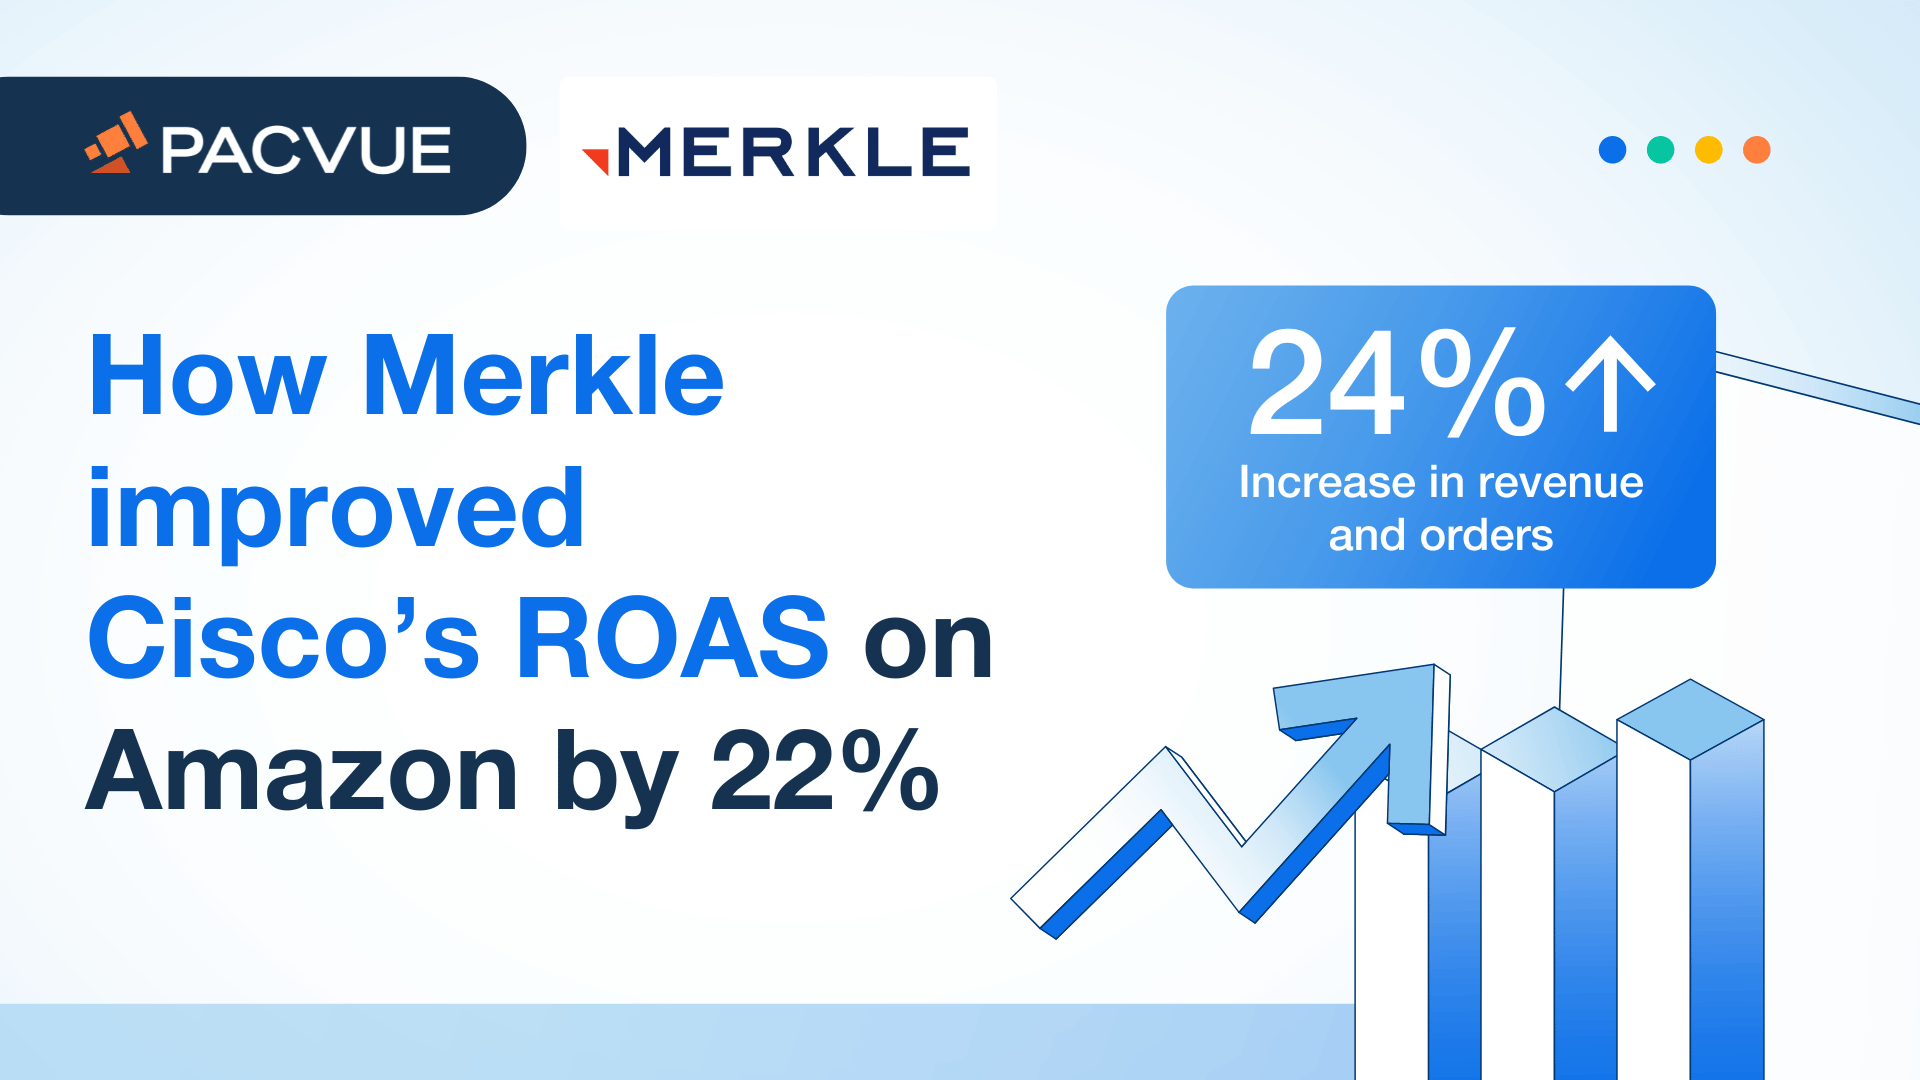 How Merkle improved Cisco's ROAS on Amazon by 22%